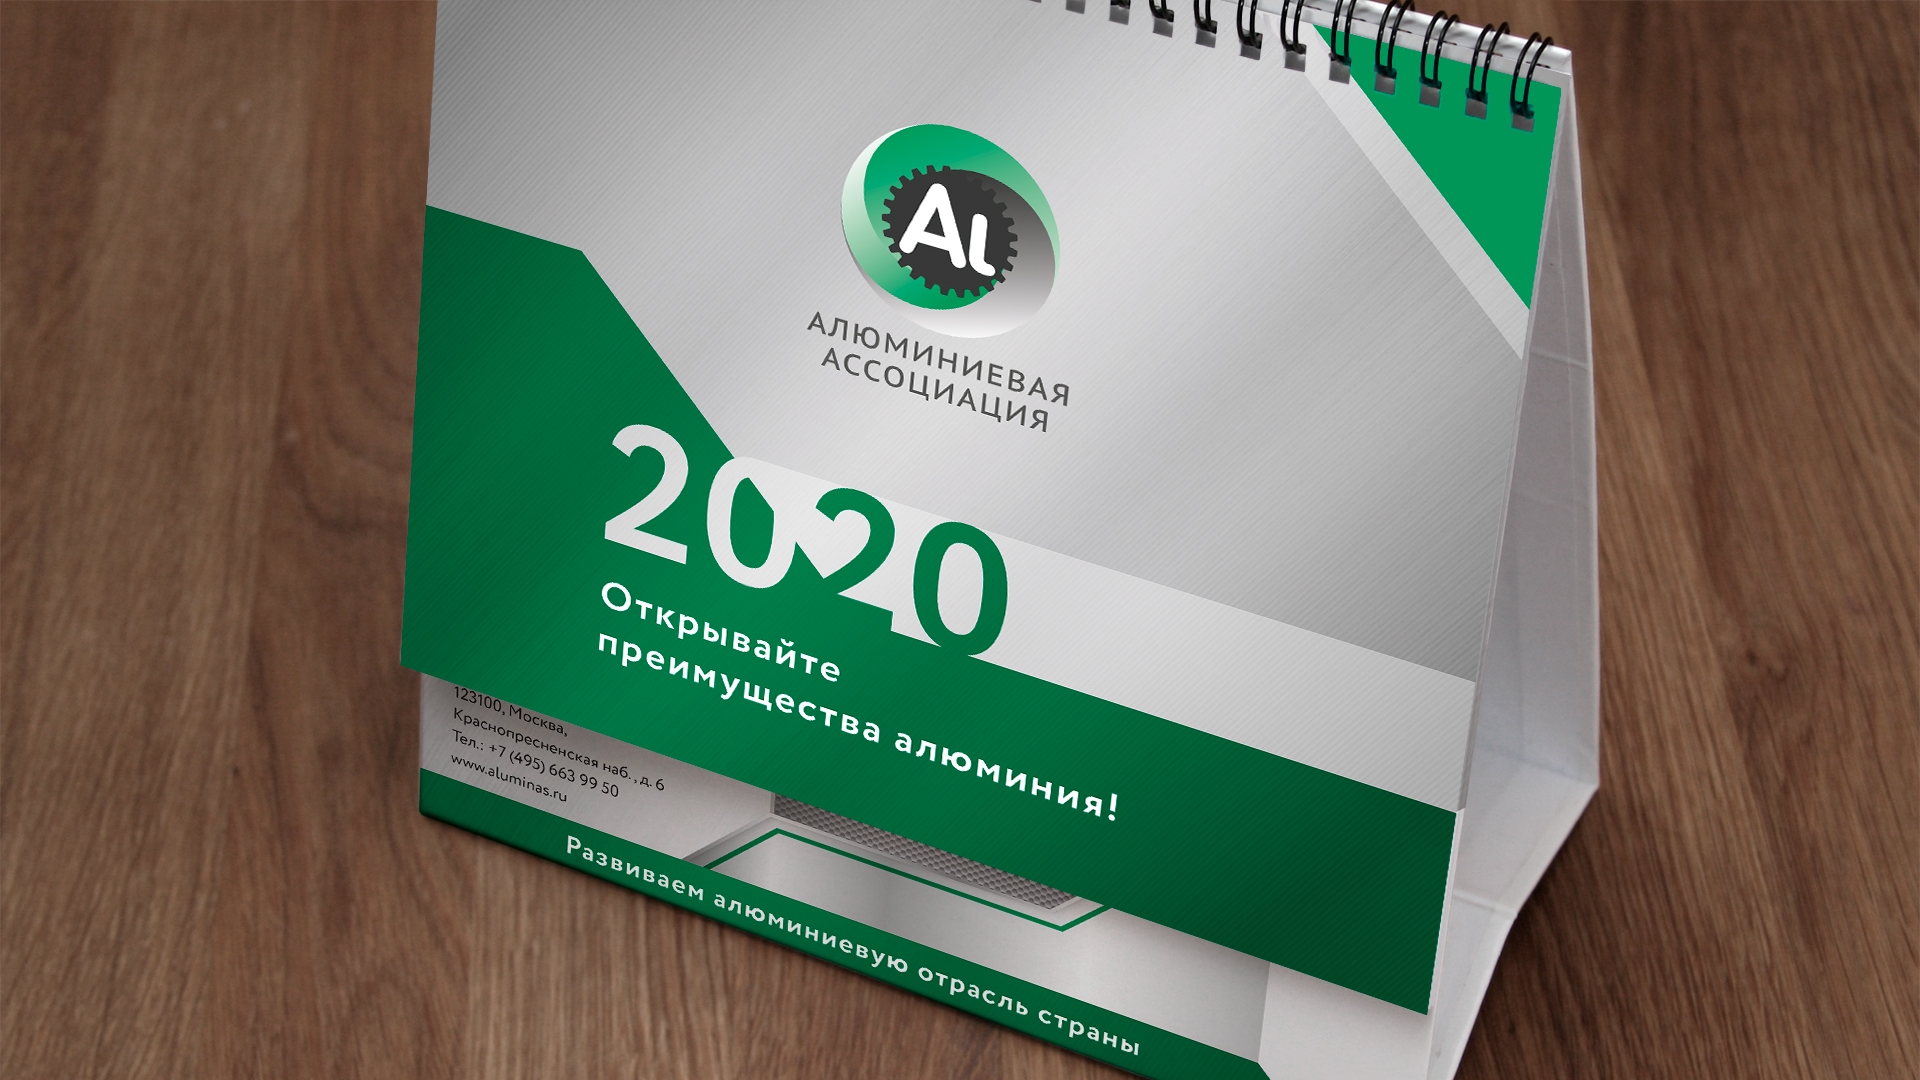 Алюминиевая ассоциация - Календарь на 2020 год